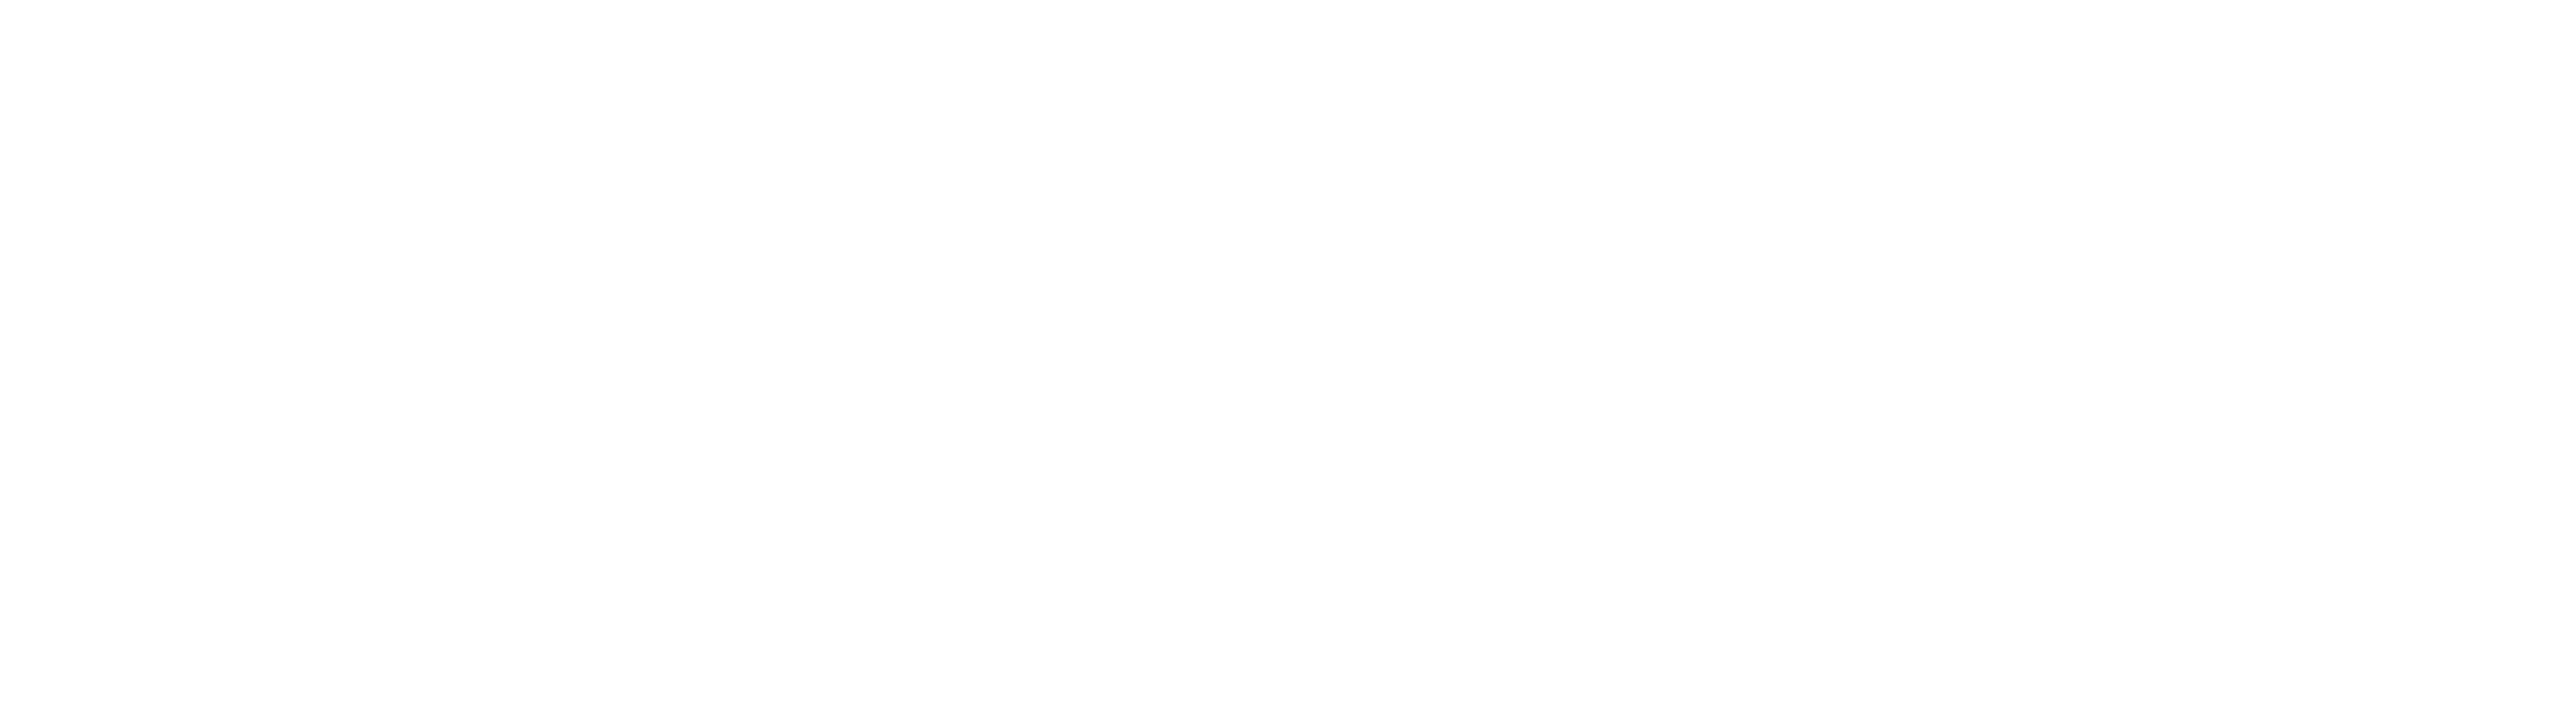 Dalma Capital Logo